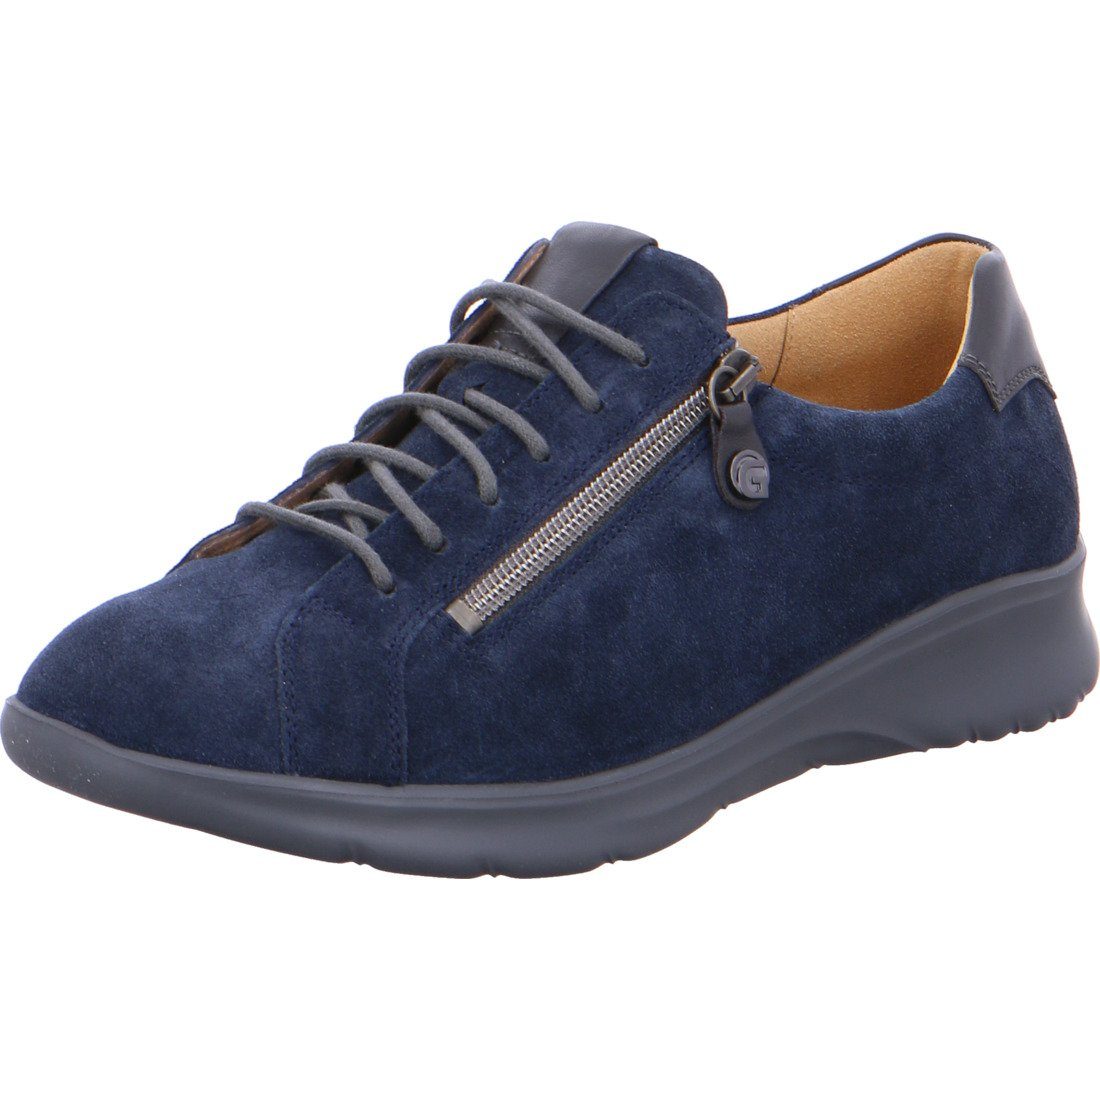 Ganter Ganter Schuhe, Schnürschuh Ina - Leder Damen Schnürschuh blau 043510 | Schnürschuhe